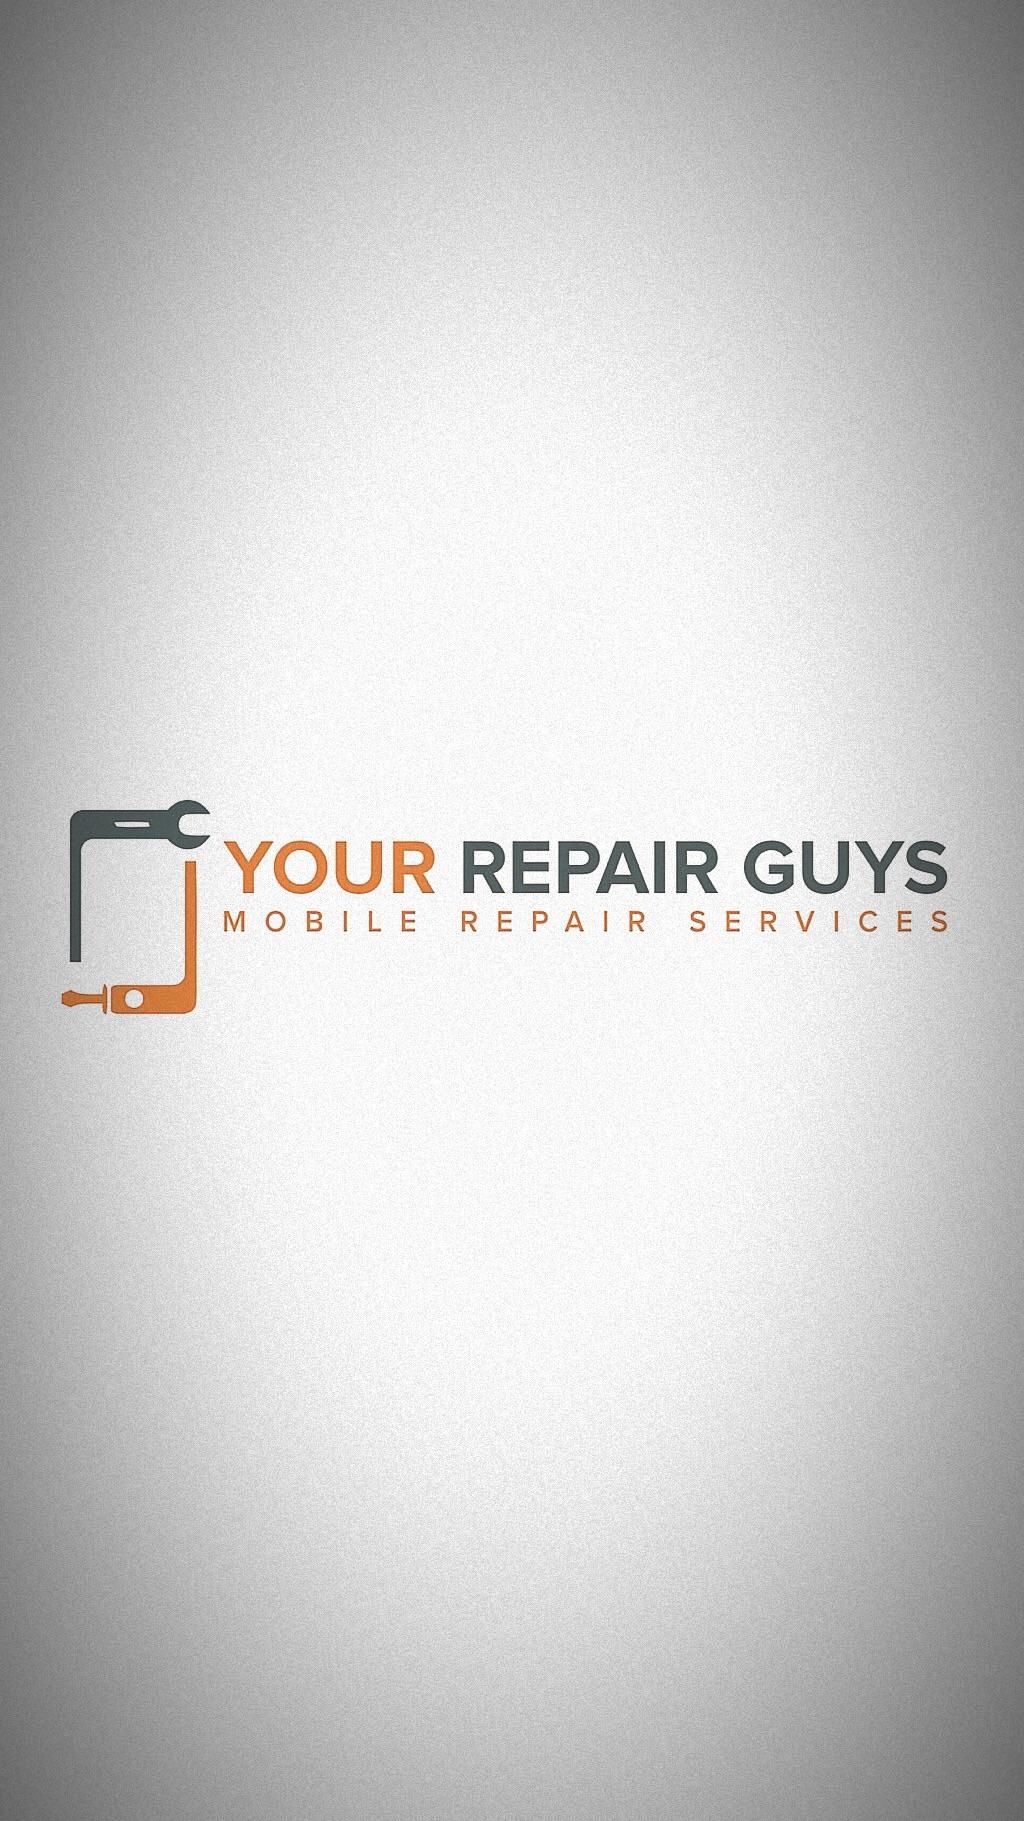 Your Repair Guys